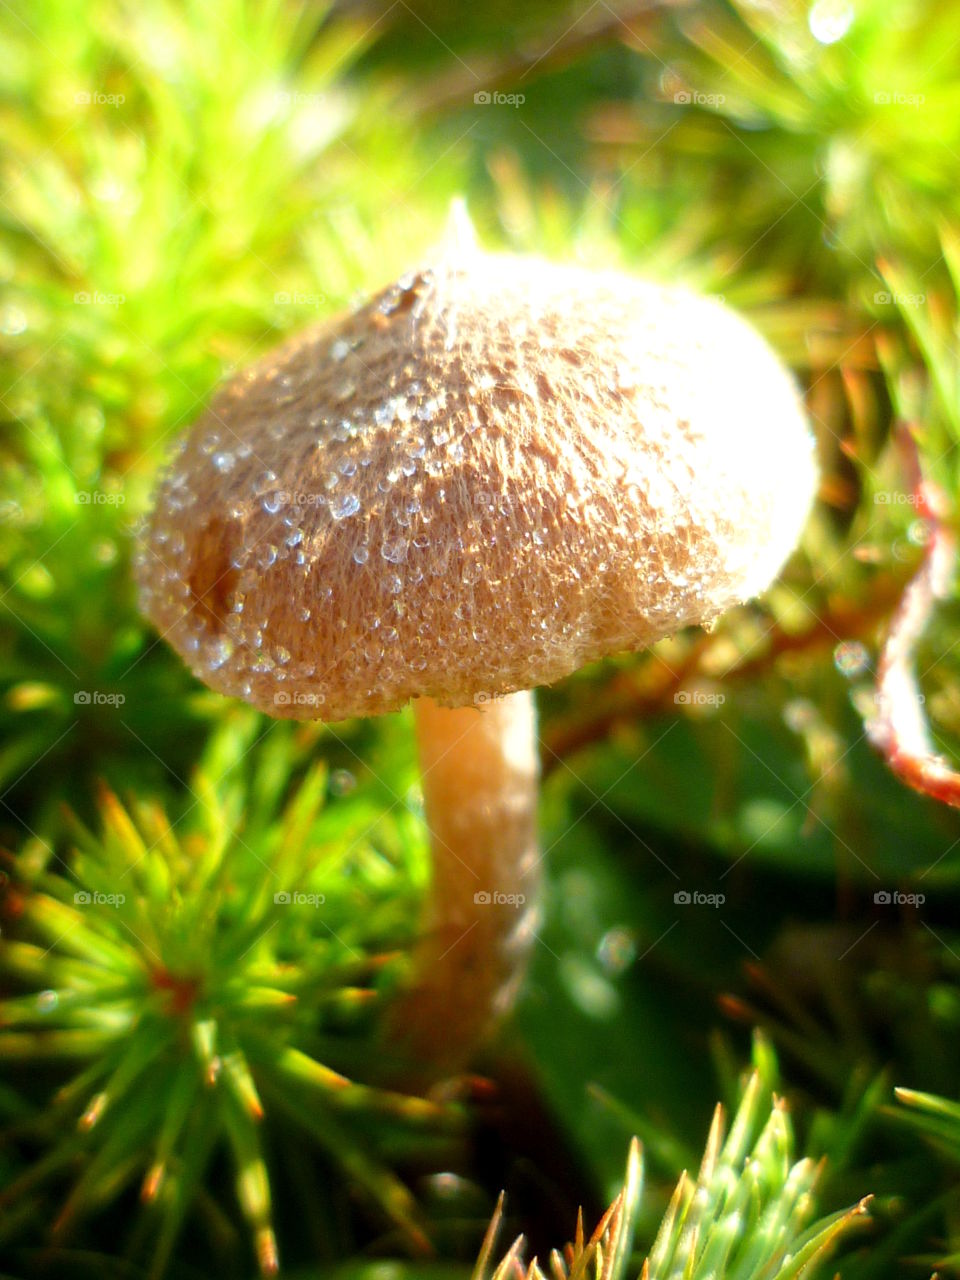 Mushroom in sunlignt